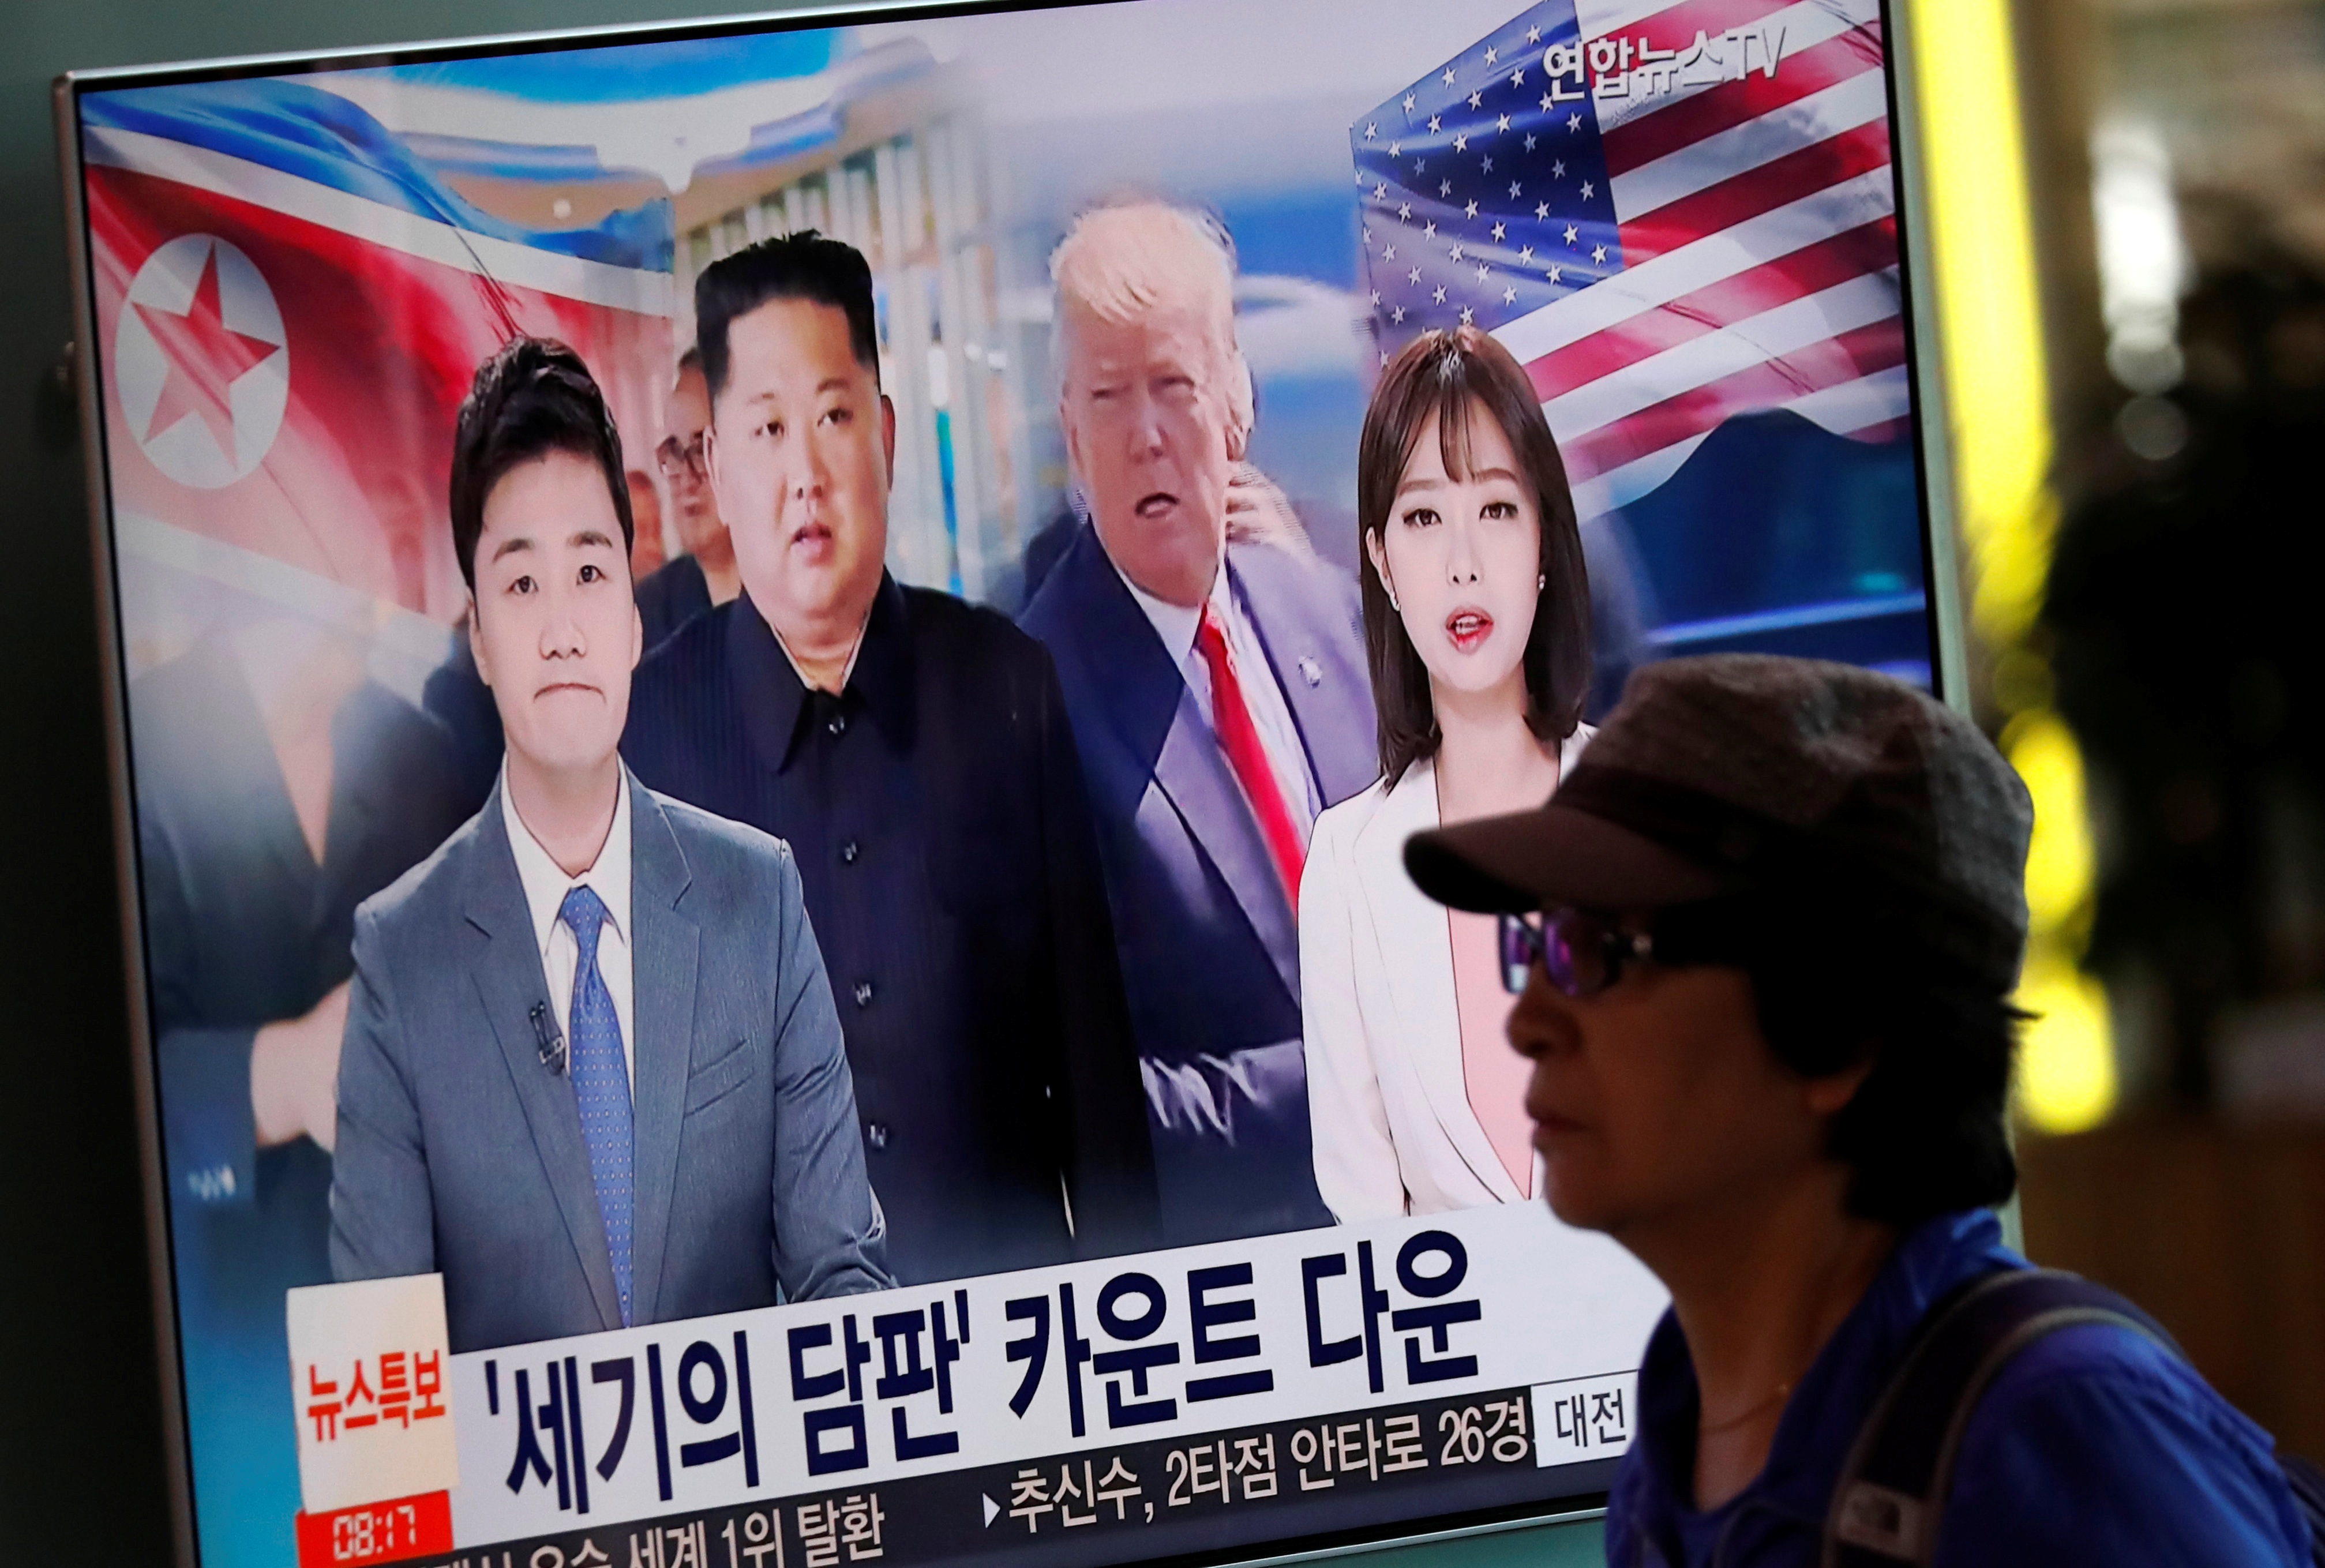 صور ترامب وزعيم كوريا الشمالية تهيمن على الشوارع فى بيونج يانج